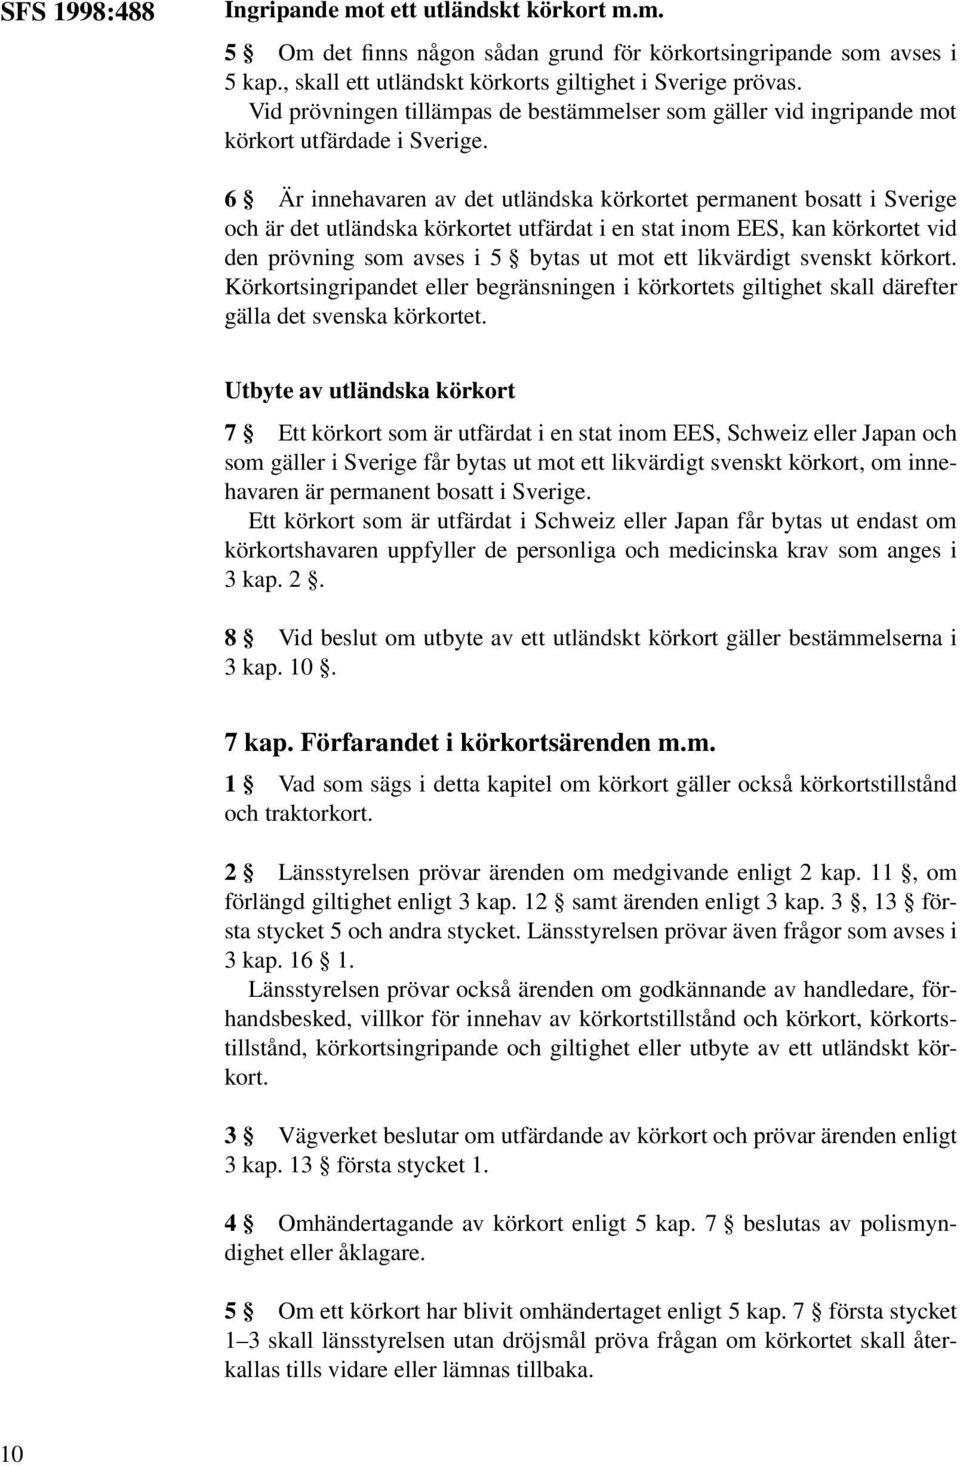 6 Är innehavaren av det utländska körkortet permanent bosatt i Sverige och är det utländska körkortet utfärdat i en stat inom EES, kan körkortet vid den prövning som avses i 5 bytas ut mot ett